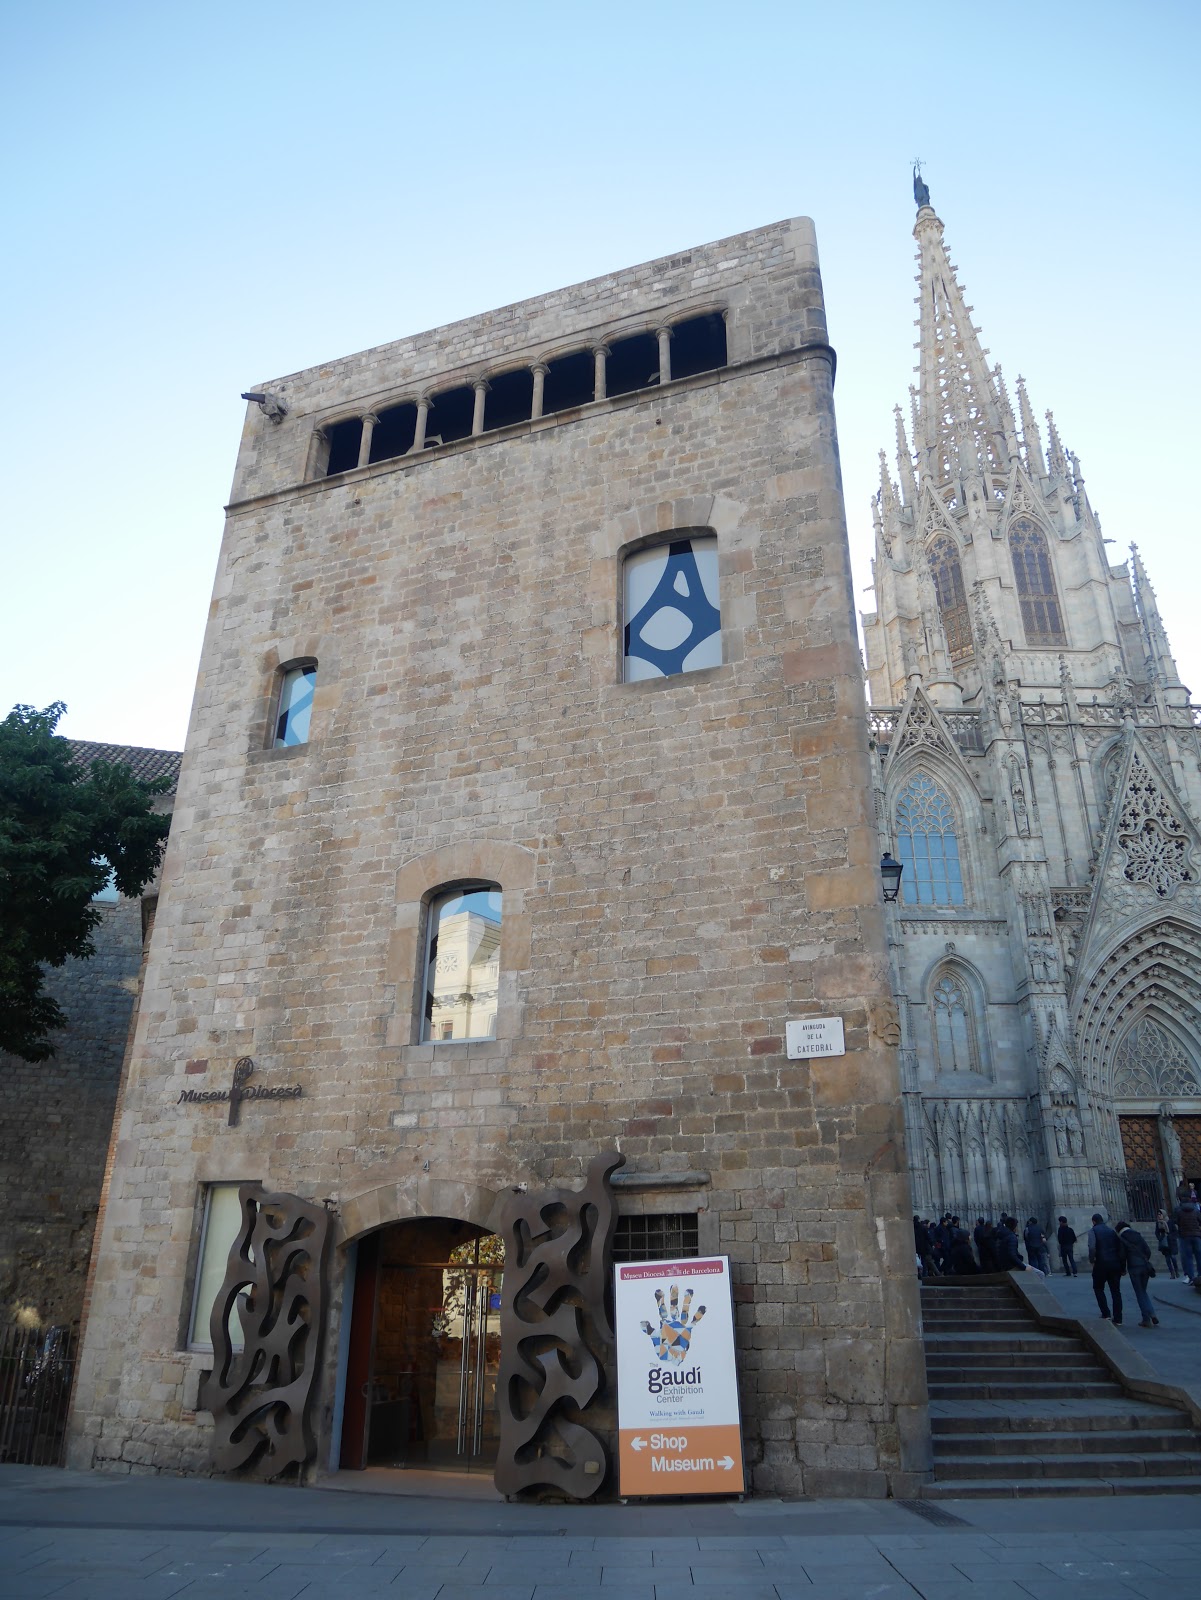 スペイン バルセロナ観光で行くべき天才建築家アントニ ガウディ博物館 Kokkologue